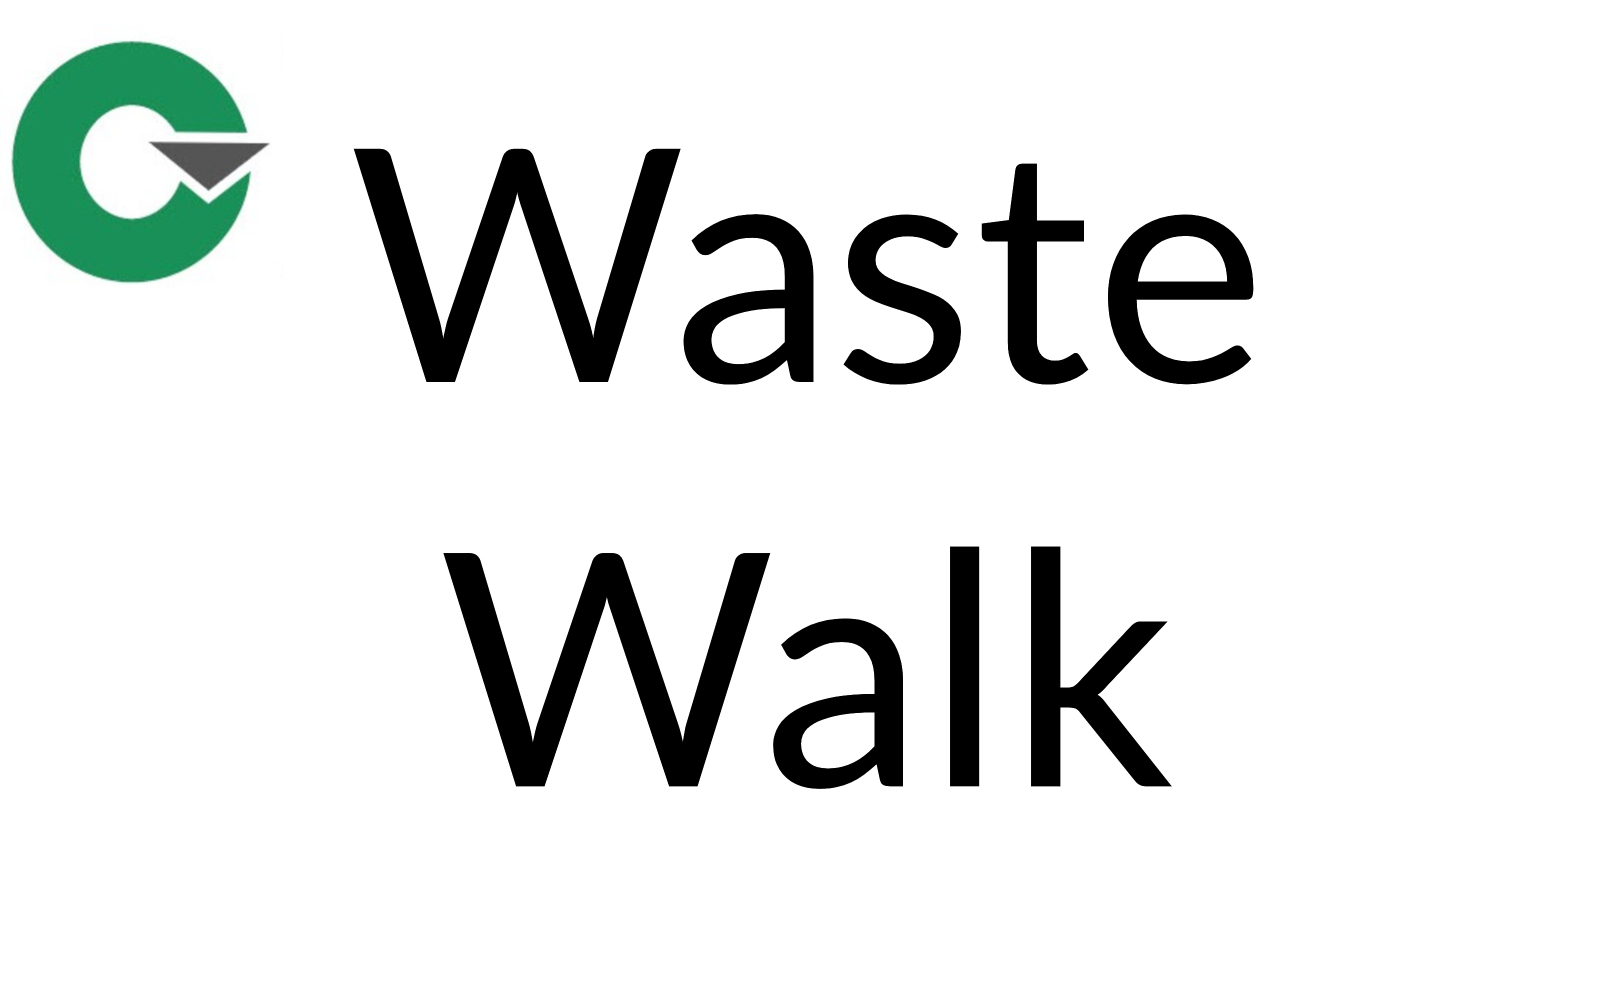 15 - Waste Walks